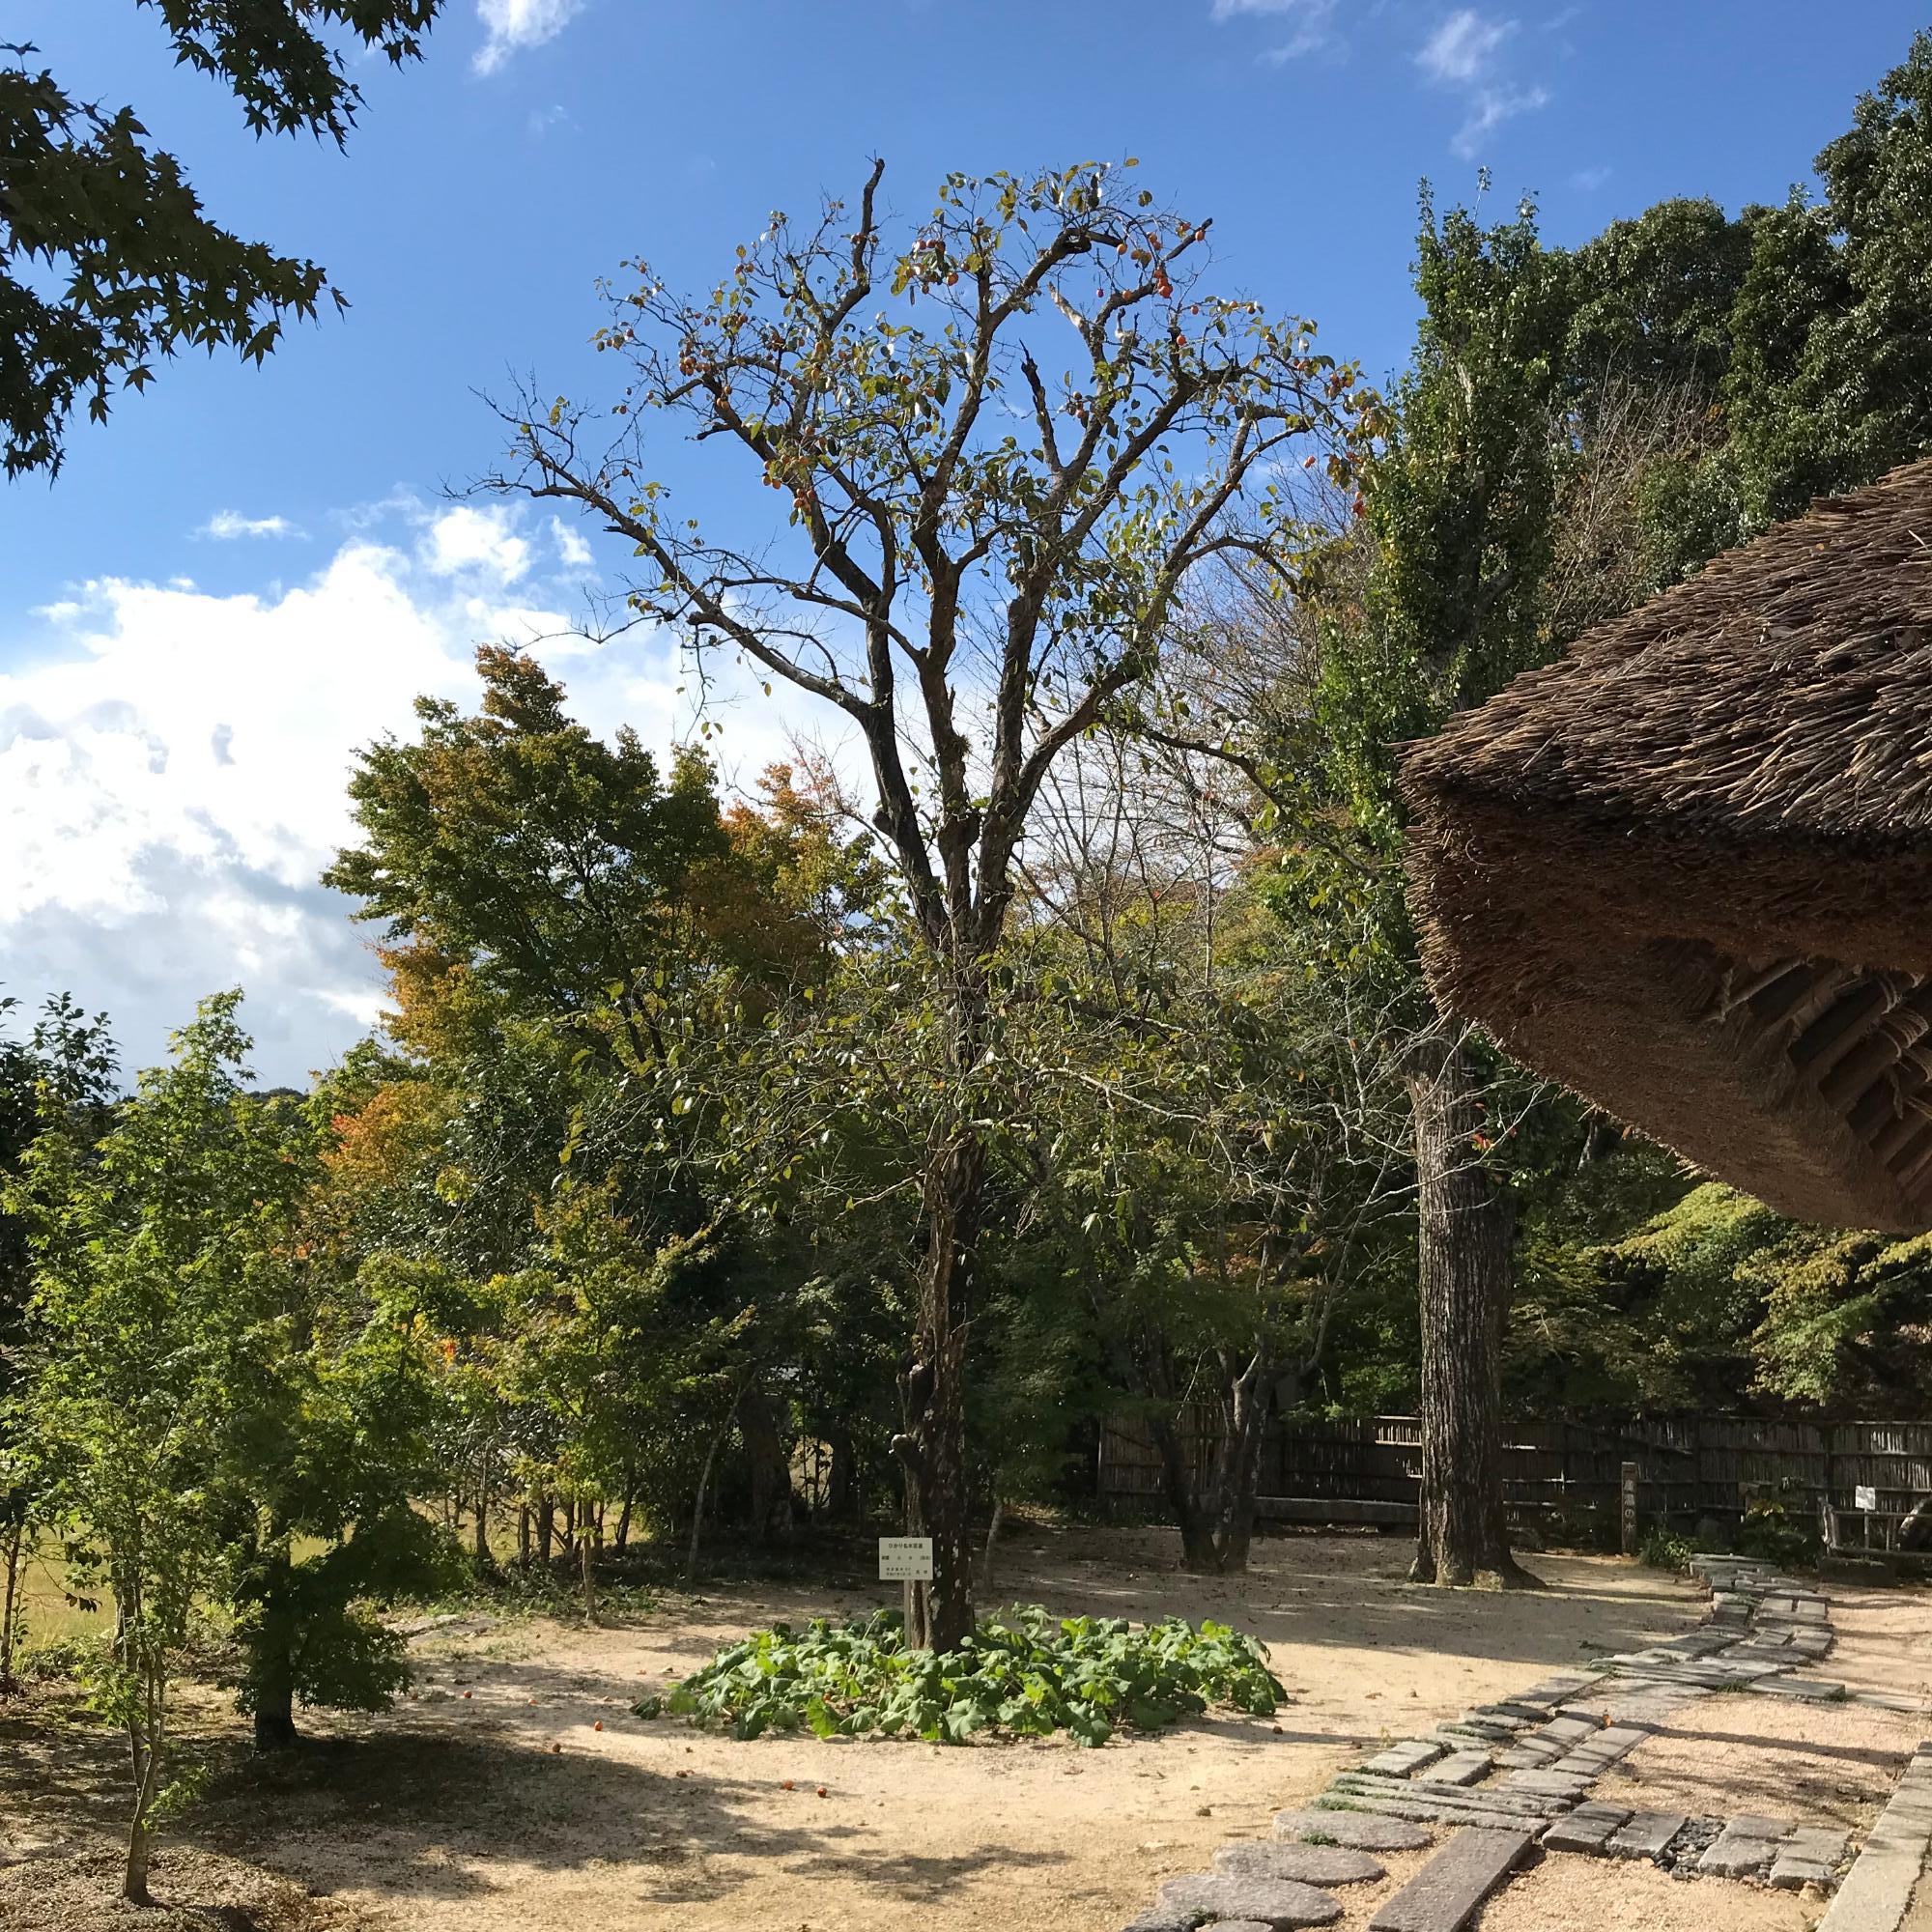 伊藤公記念公園の中にある柿の木の写真